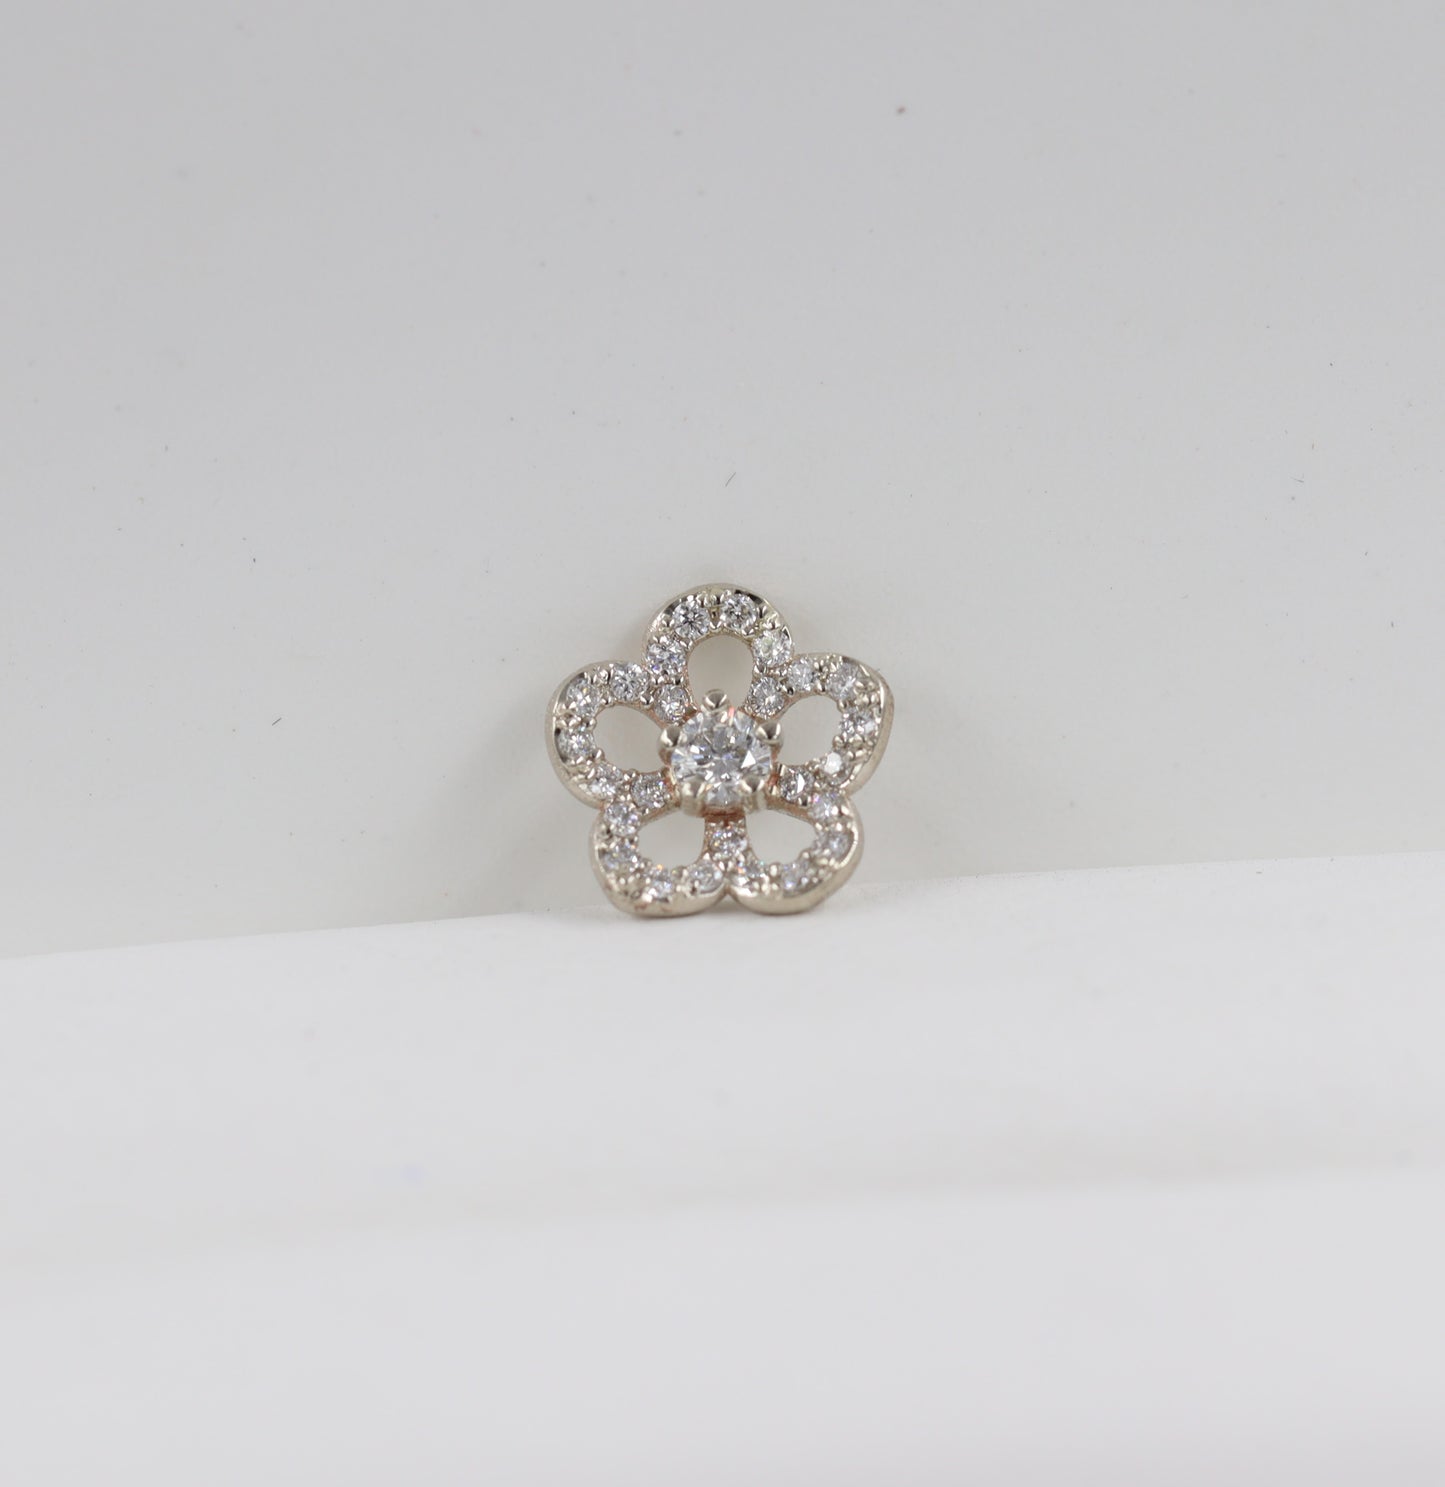 Diamond Rose Earrings/ Total 0.5ct Flower Push Back Earrings/14K gold Flower Screw Back Earrings/Anniversary gift